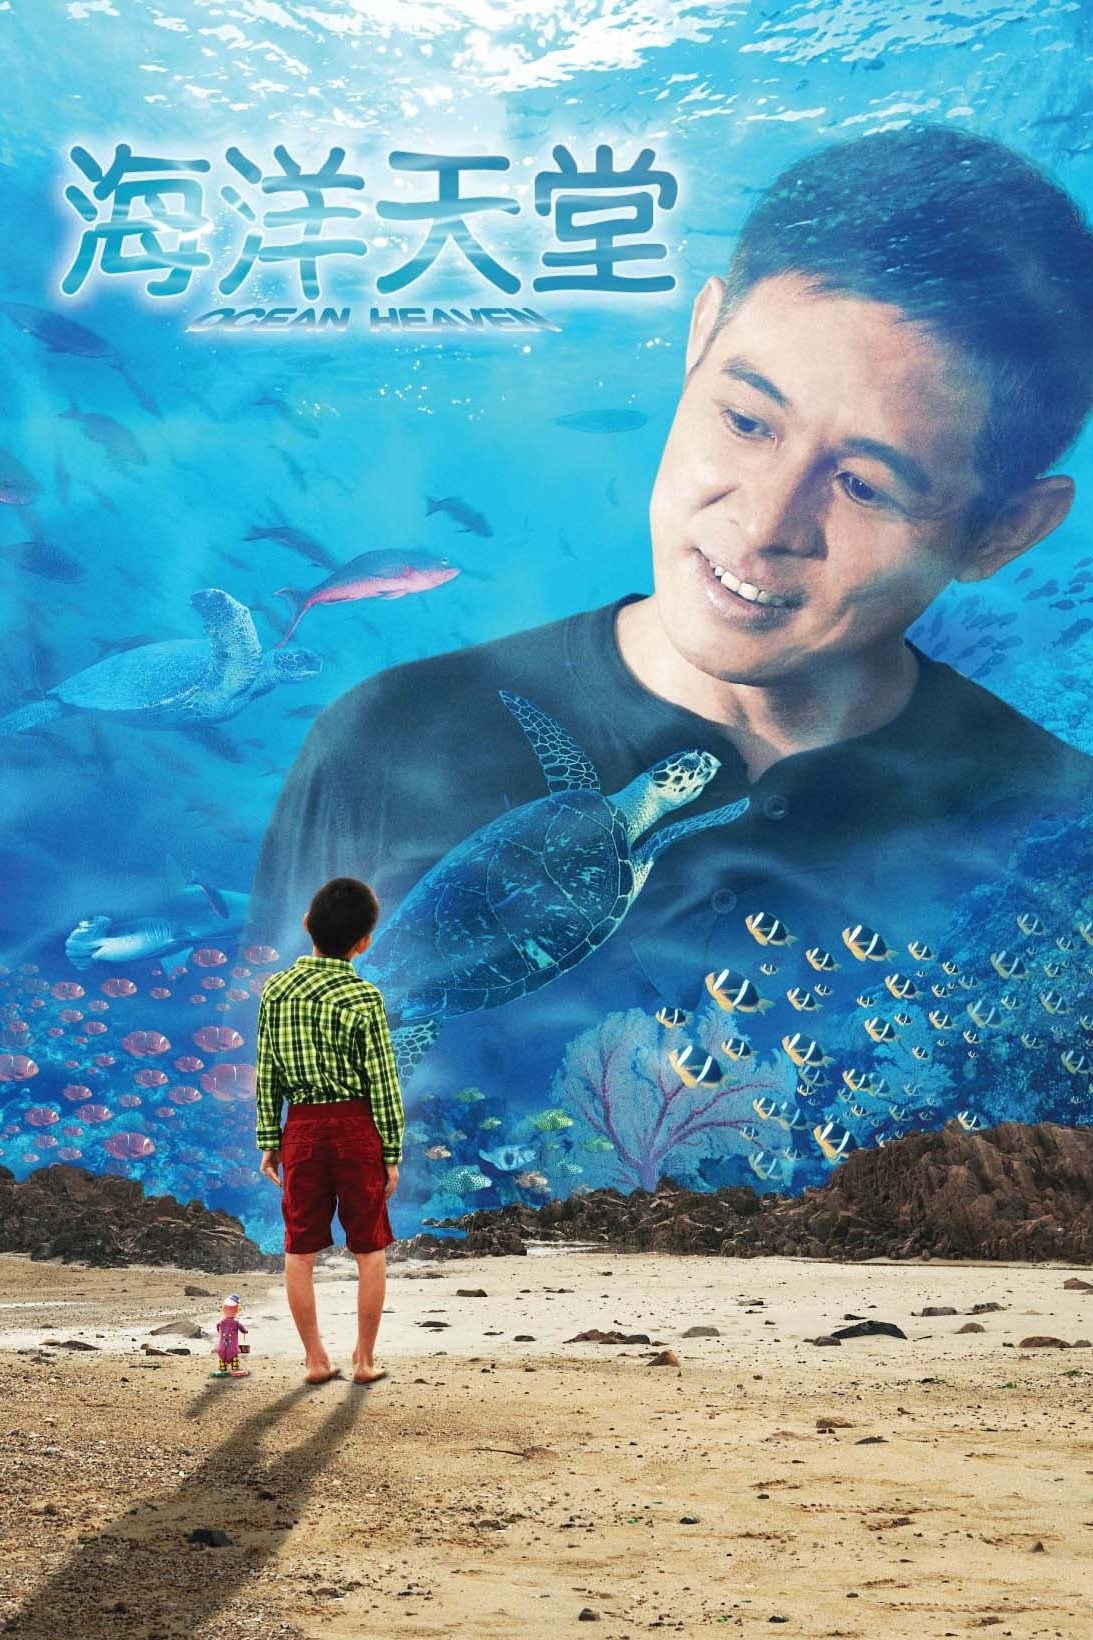 Plakat von "海洋天堂"